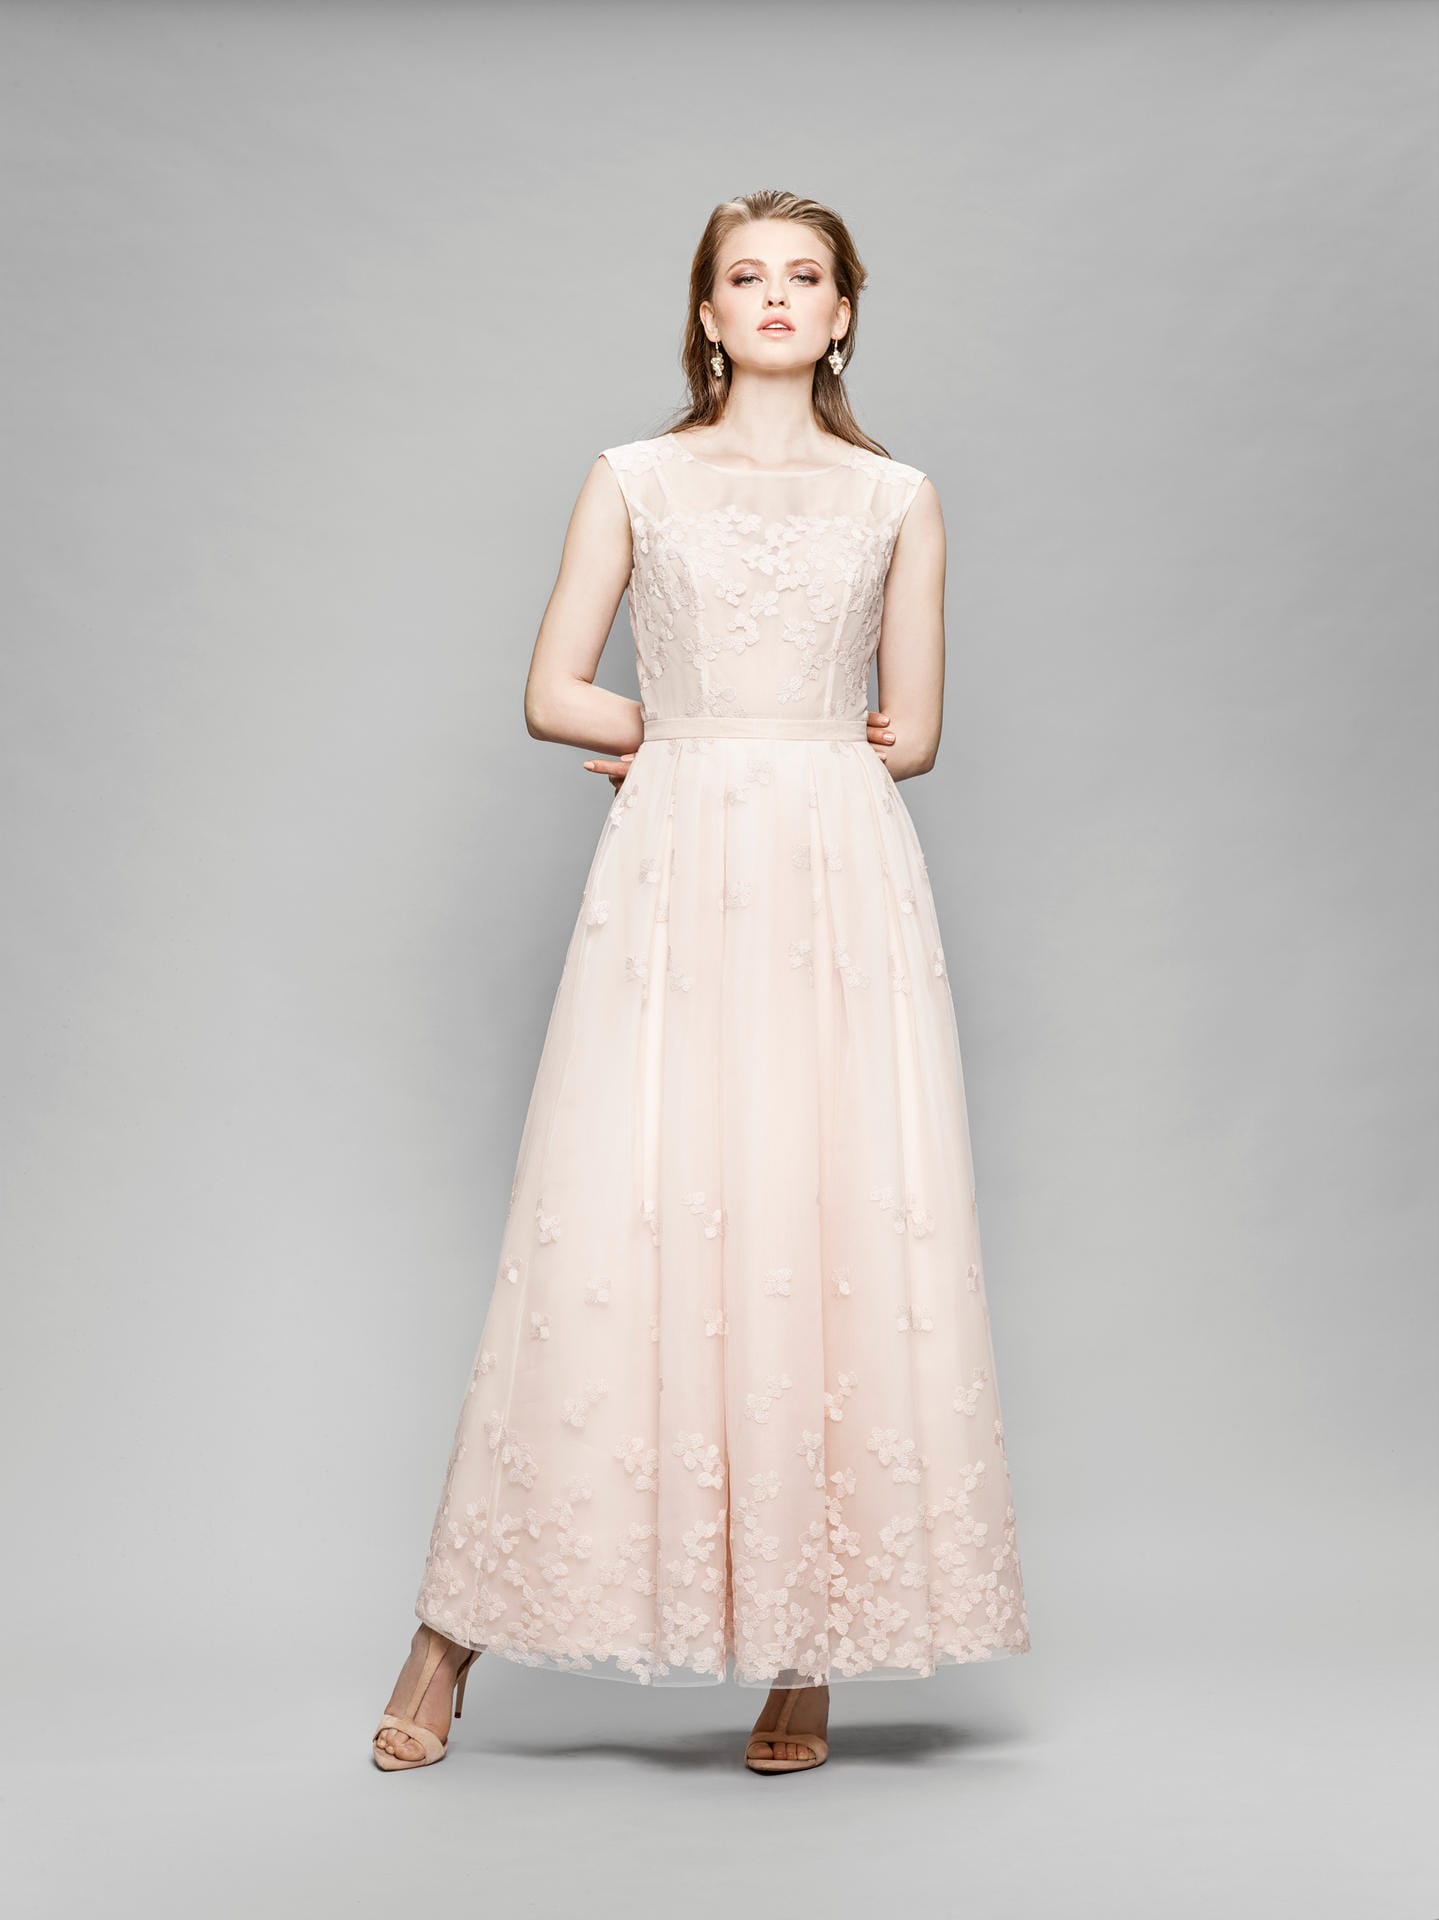 Besonders zarte Farben, sind schon länger in der Brautmode zu finden. Das Unternehmen Marylise zeigt in seiner Kollektion für 2018 eine zartrosa Robe.